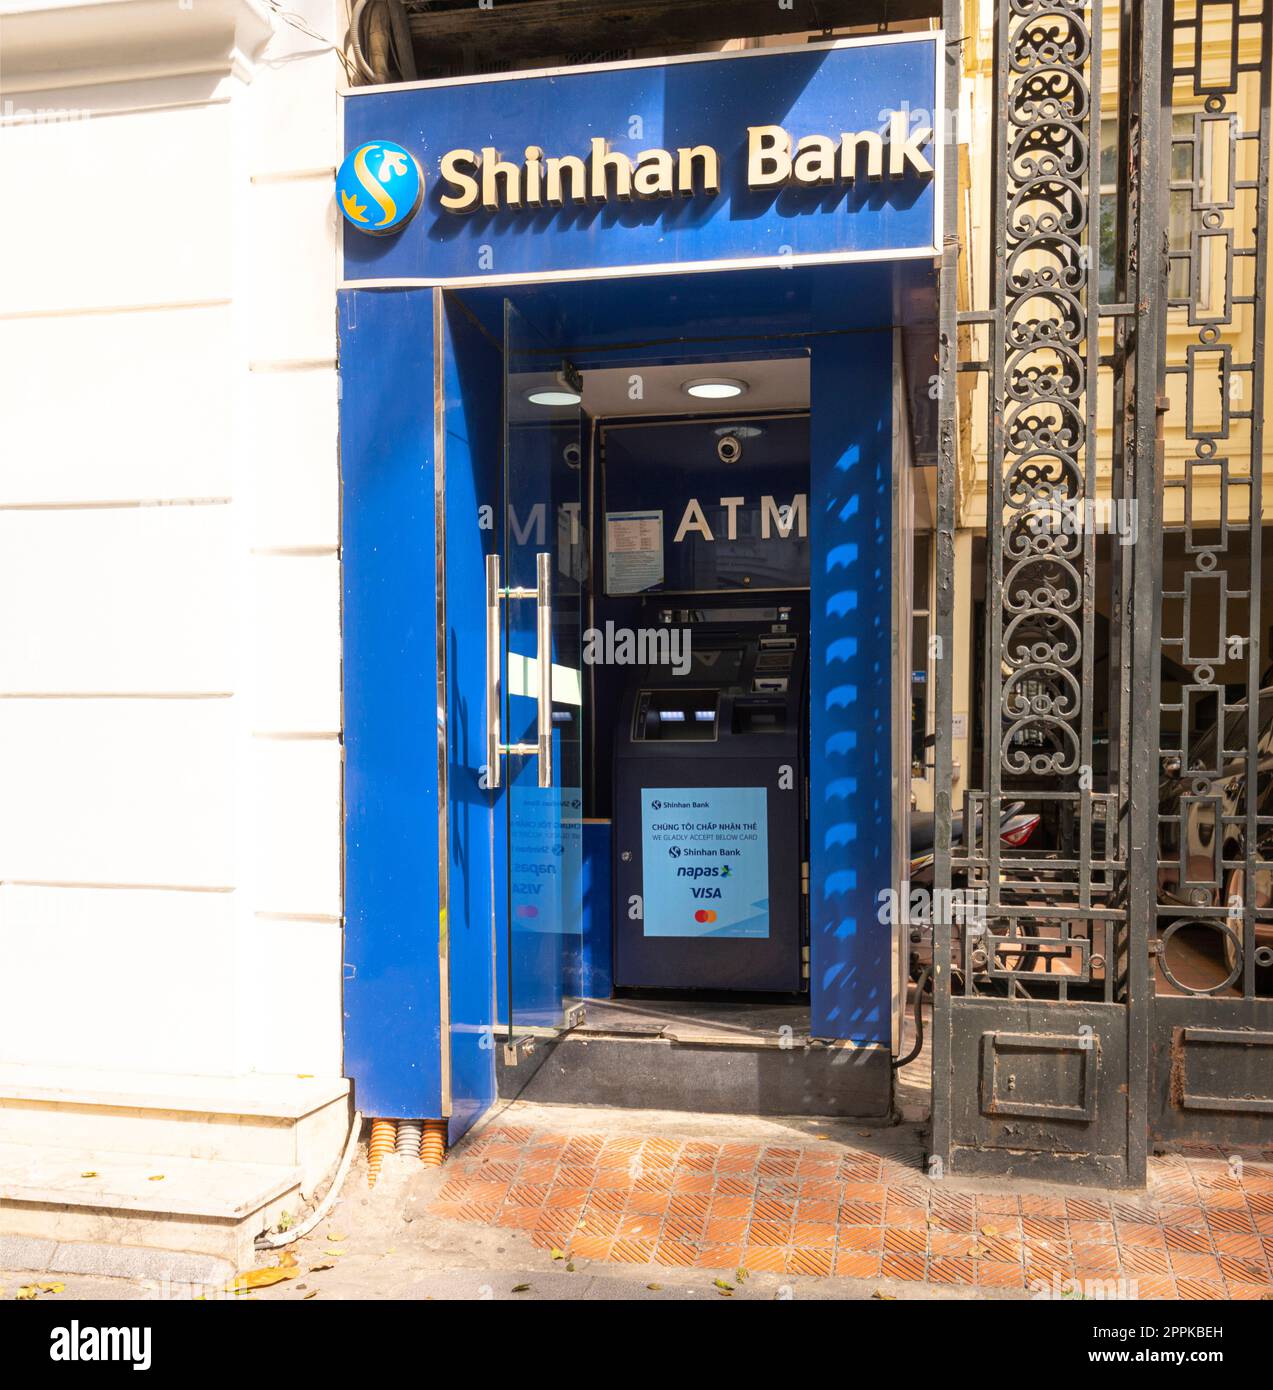 Shinhan Bank celebrates 30 years in Vietnam